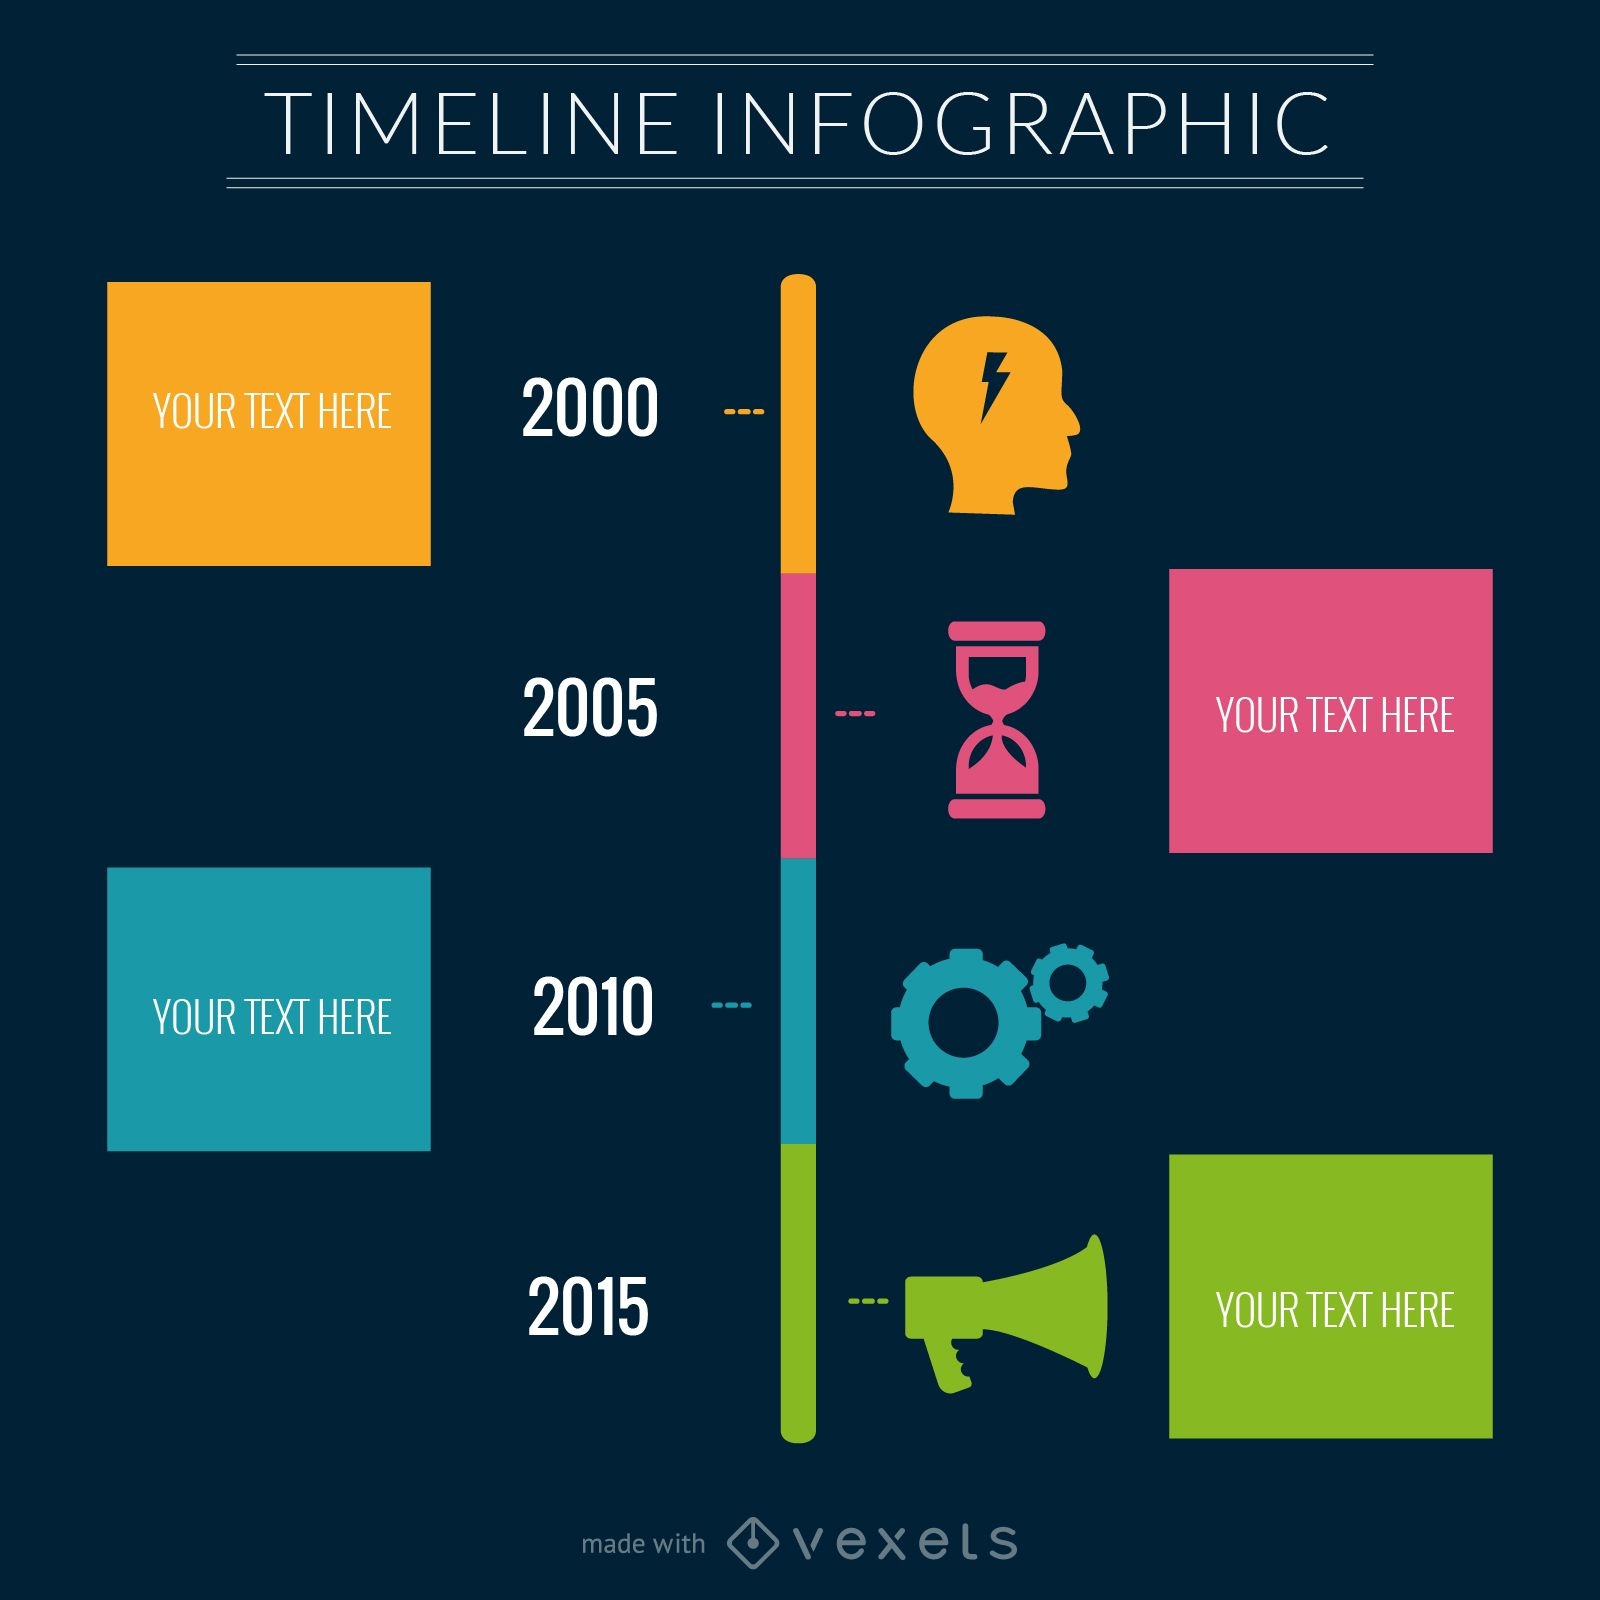 Timeline infographic maker